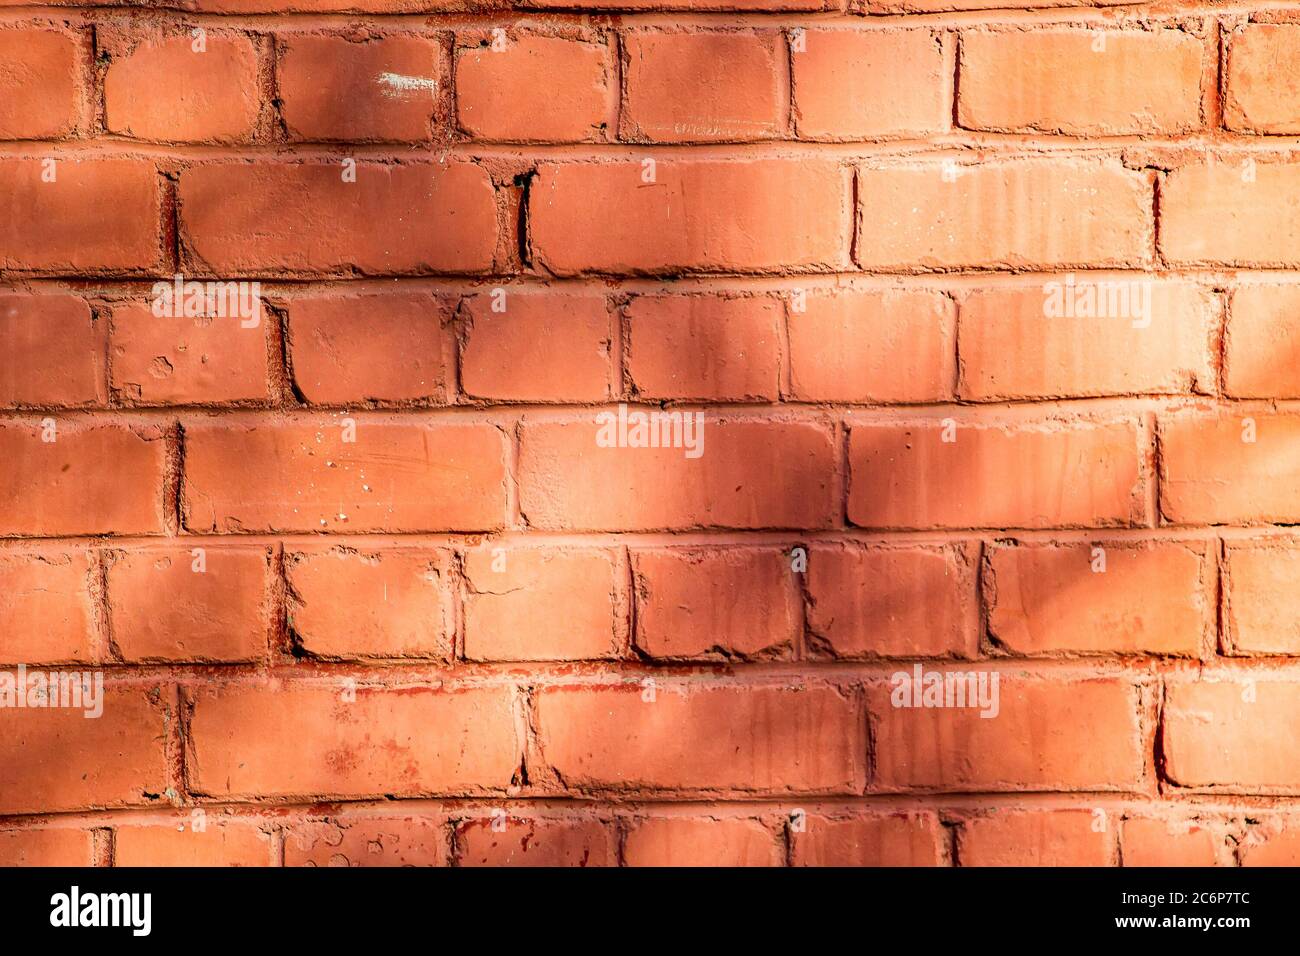 Mur en brique orange, texture pour le design Banque D'Images